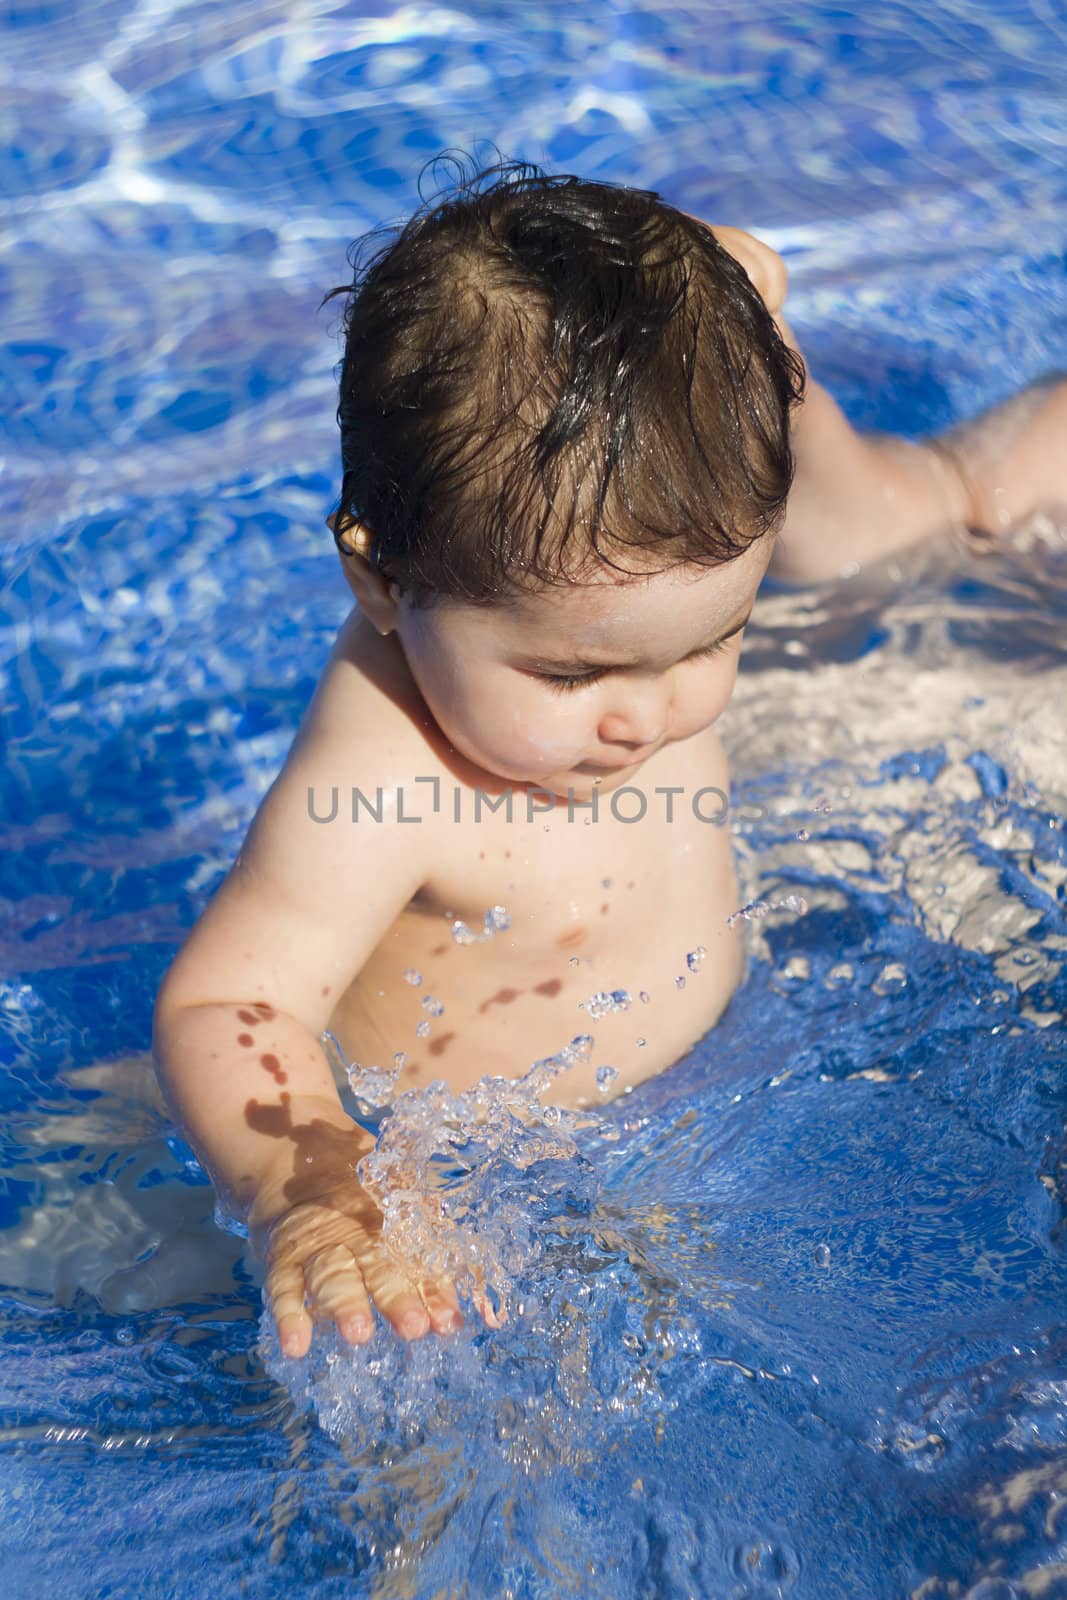 Newborn baby enjoying the summer in the pool by FernandoCortes